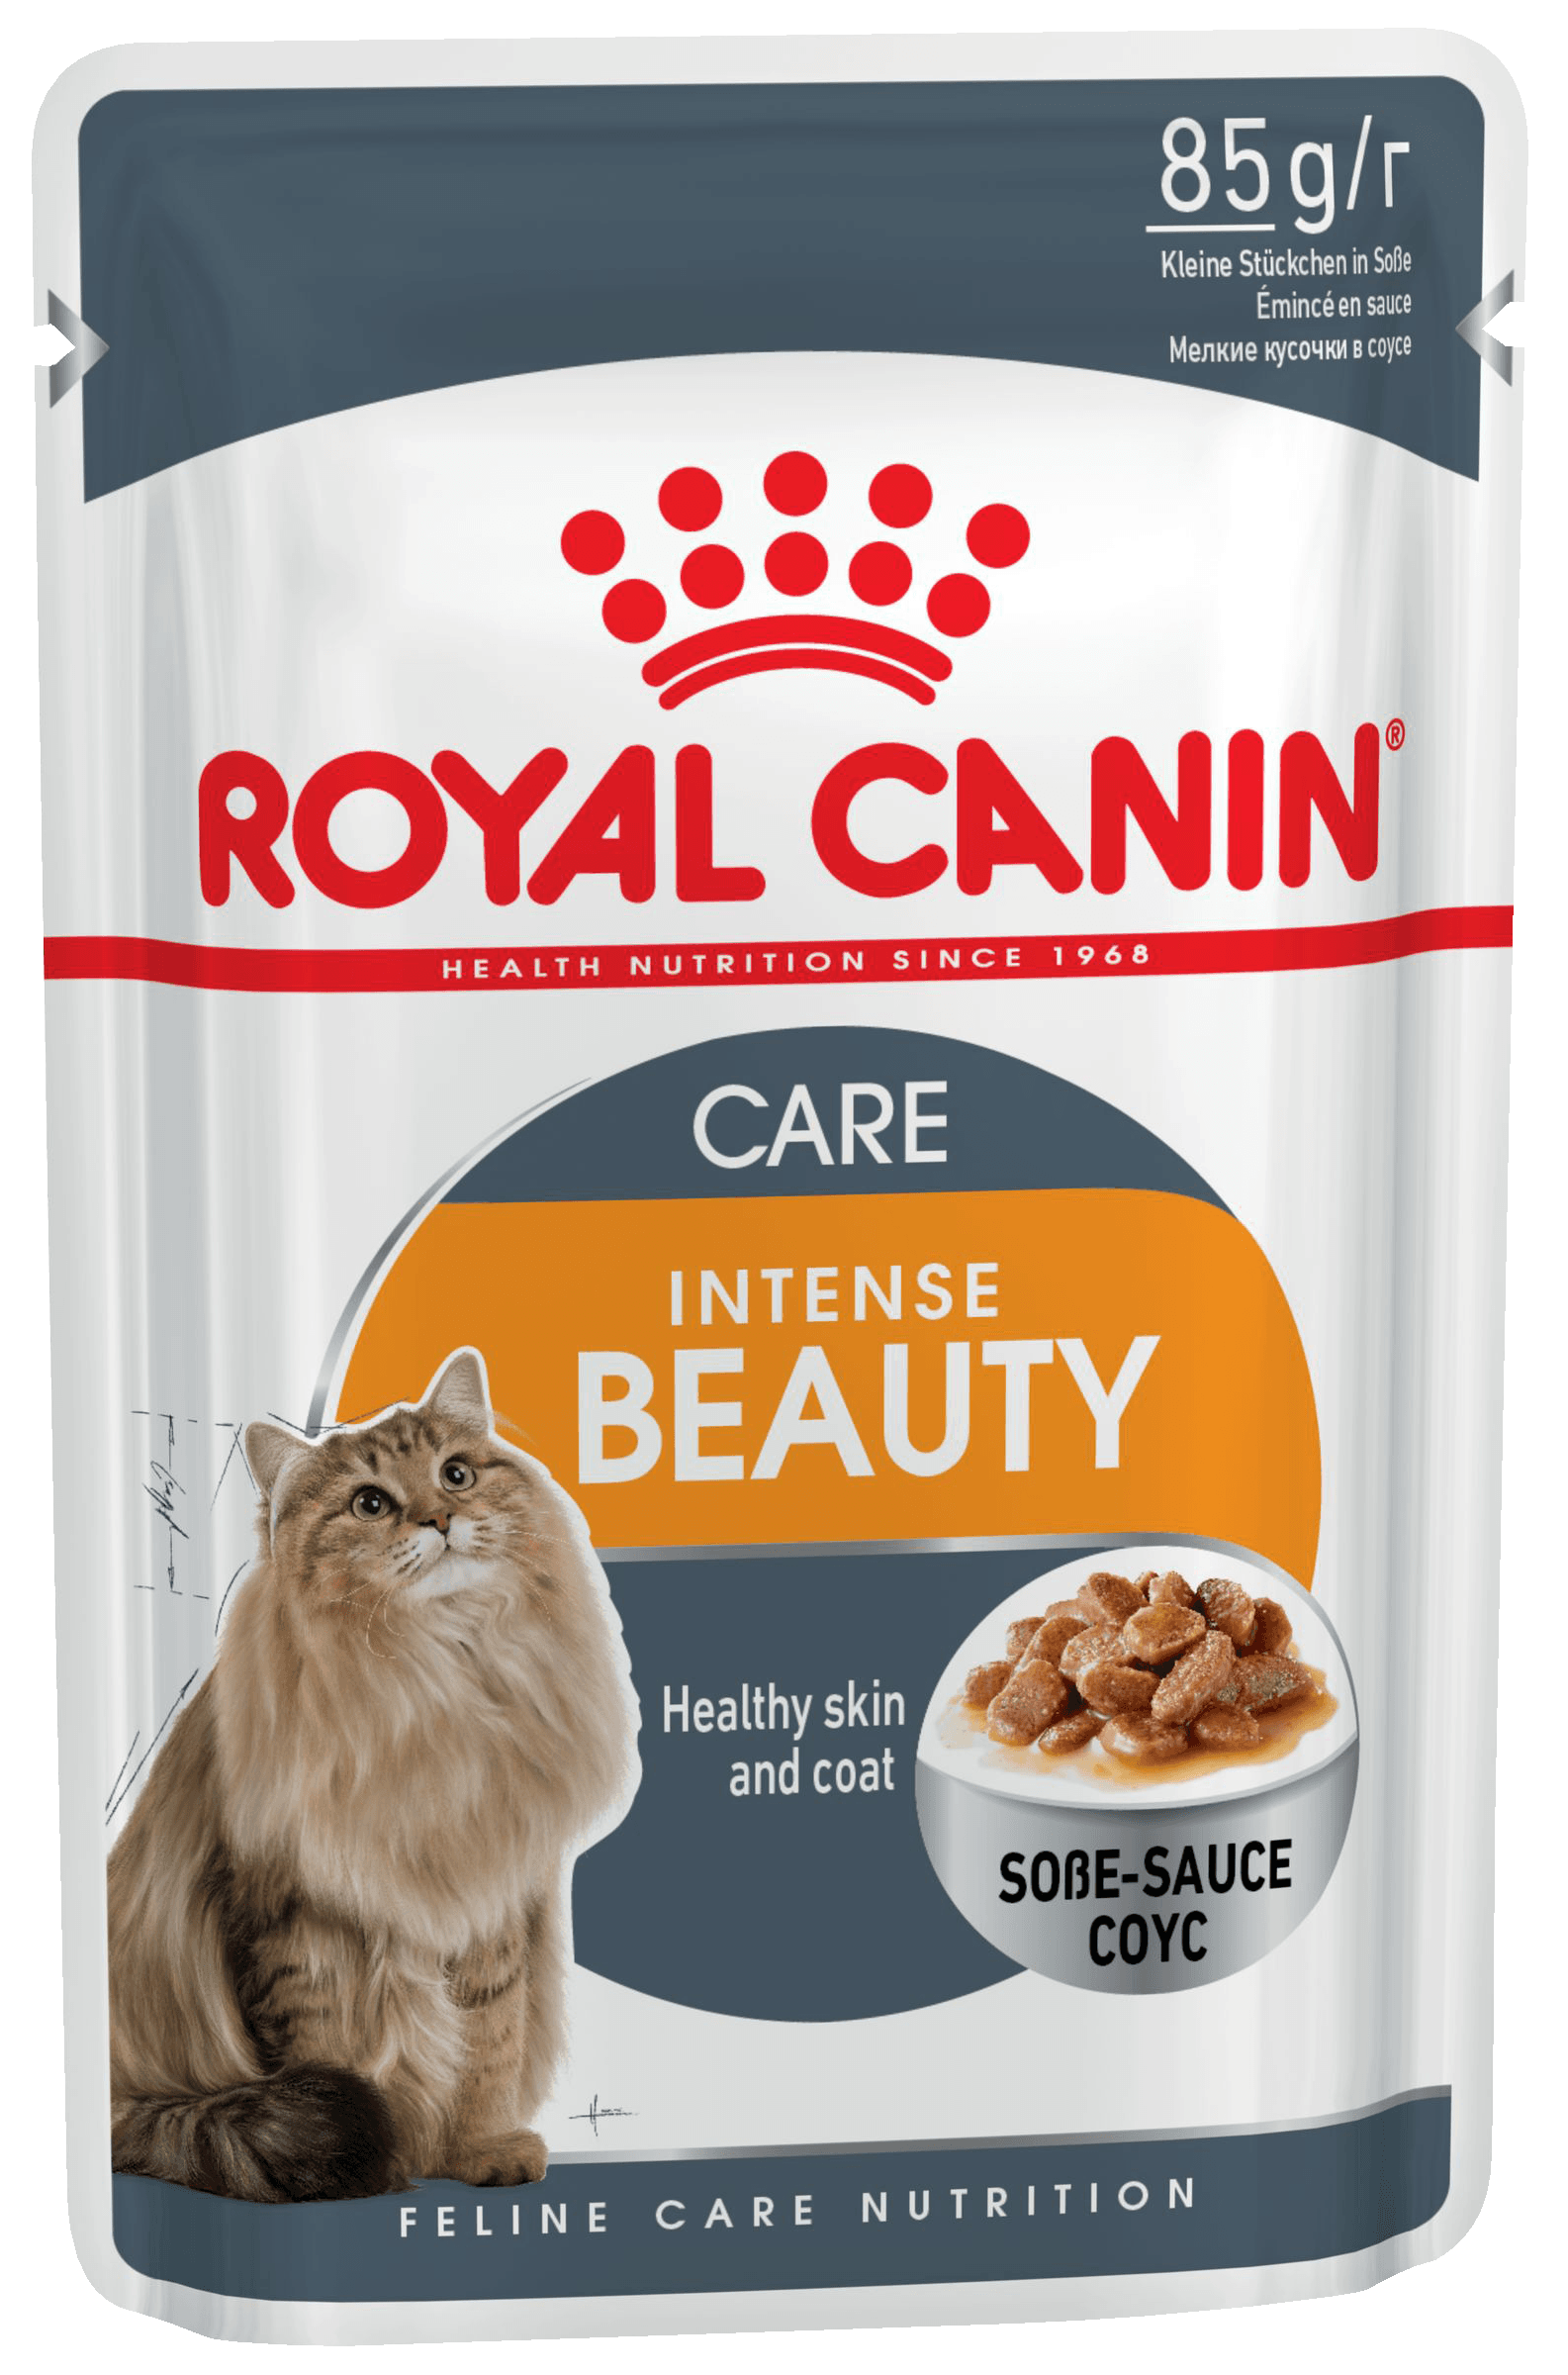 Royal Canin для поддержания красоты шерсти кошек